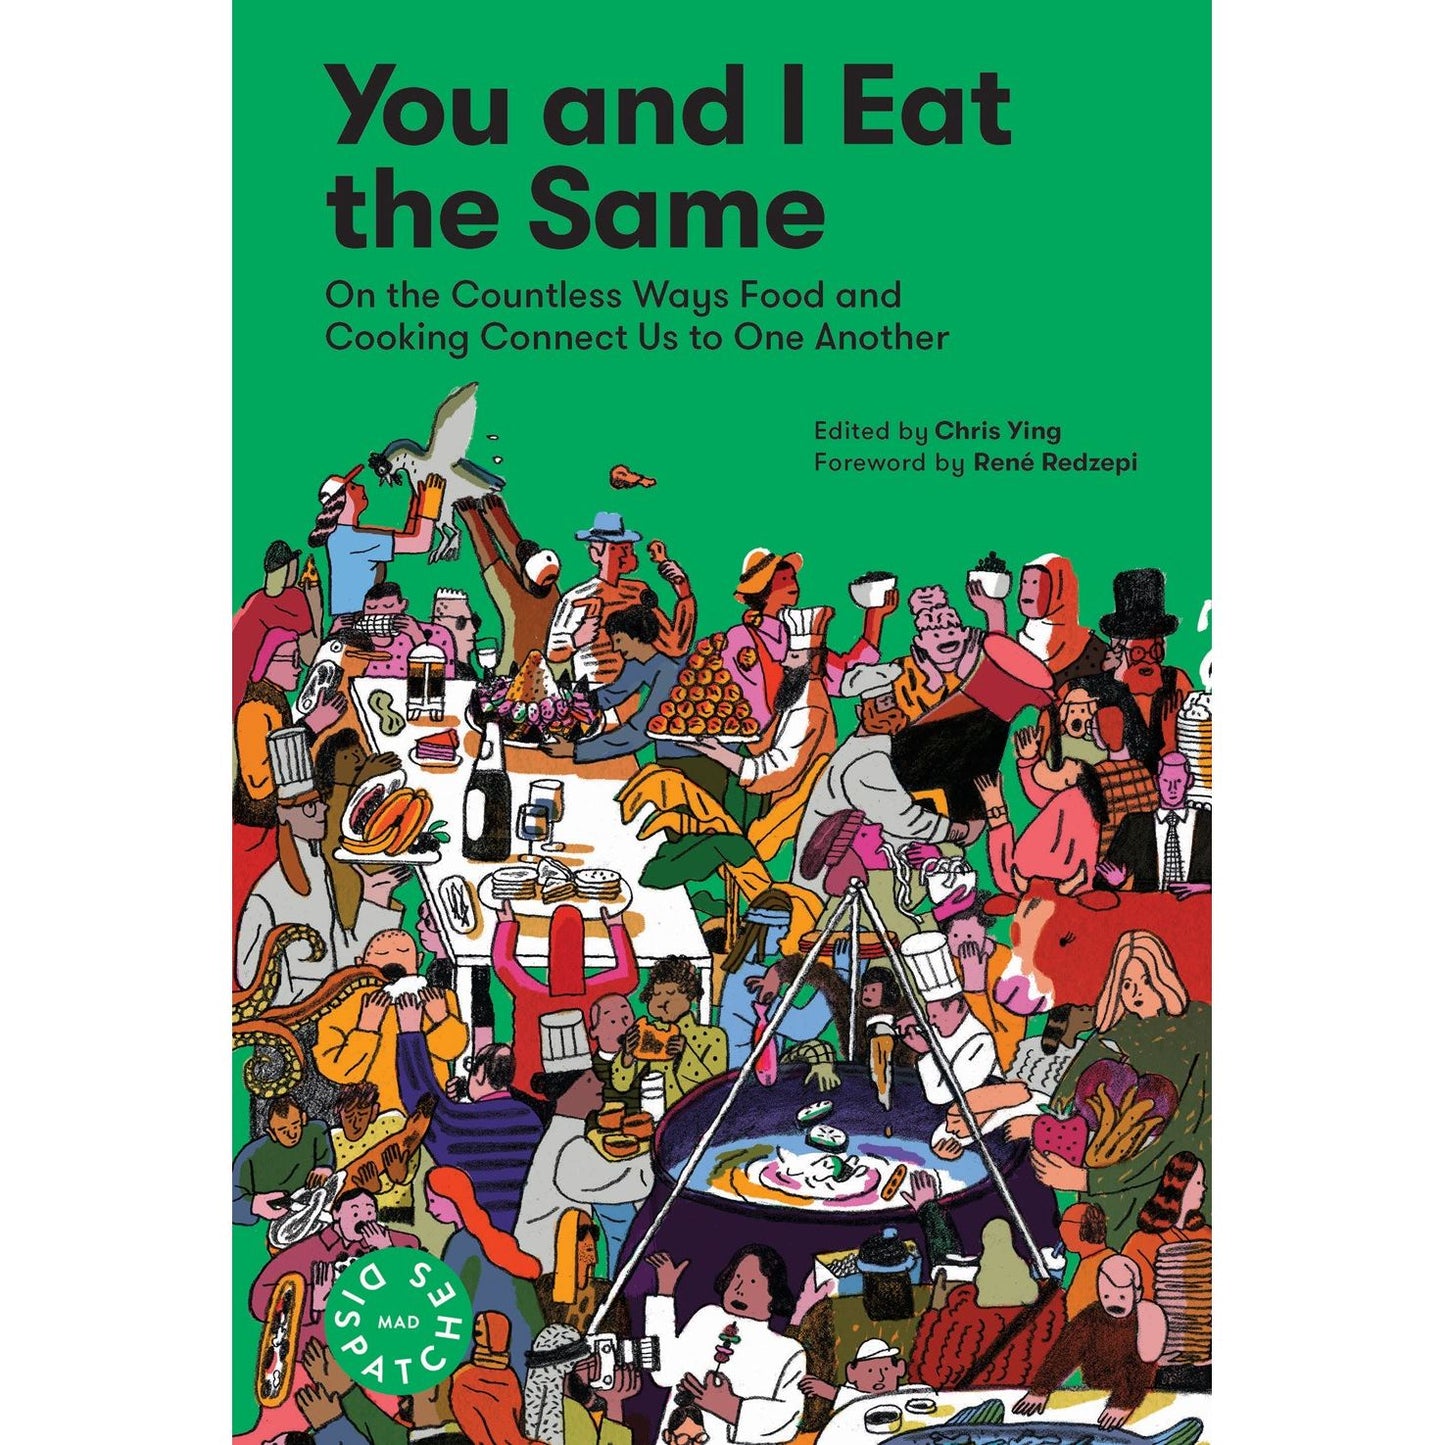 You and I Eat the Same (Chris Ying ed)